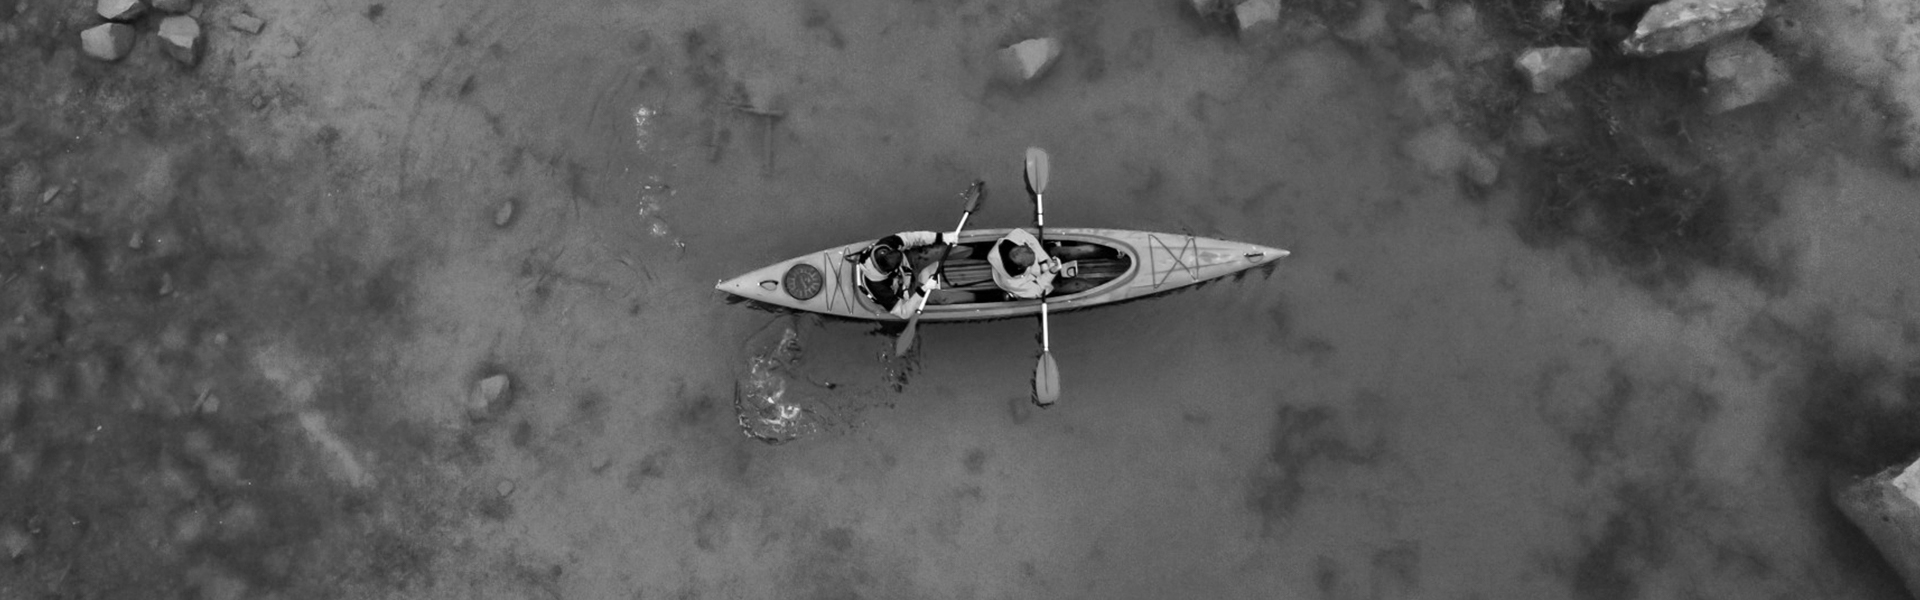 Imagen aérea de un kayak de 2 personas